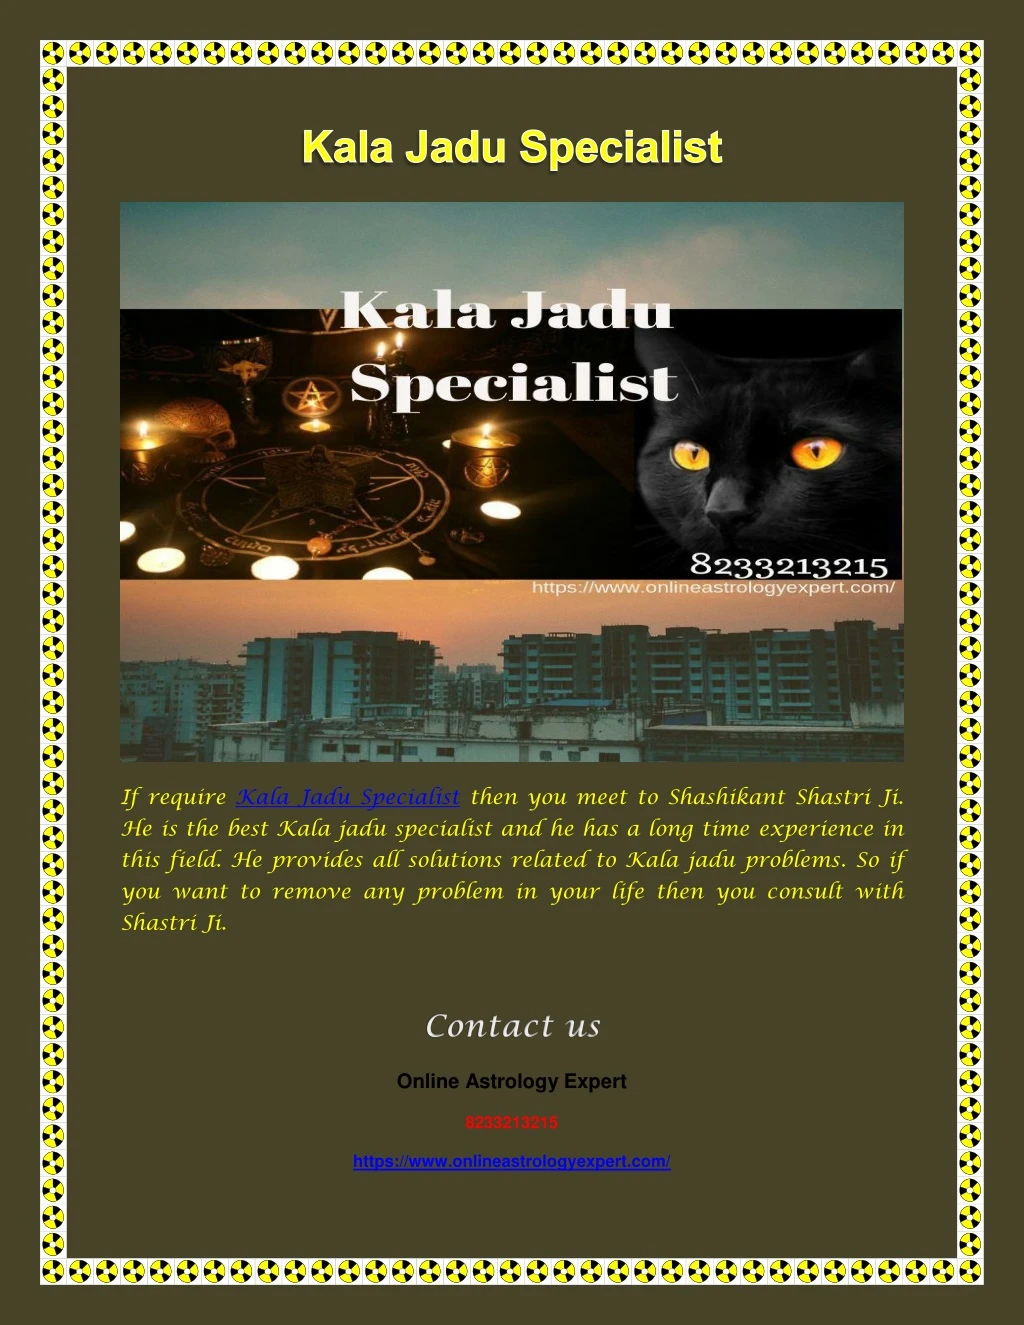 if require kala jadu specialist then you meet